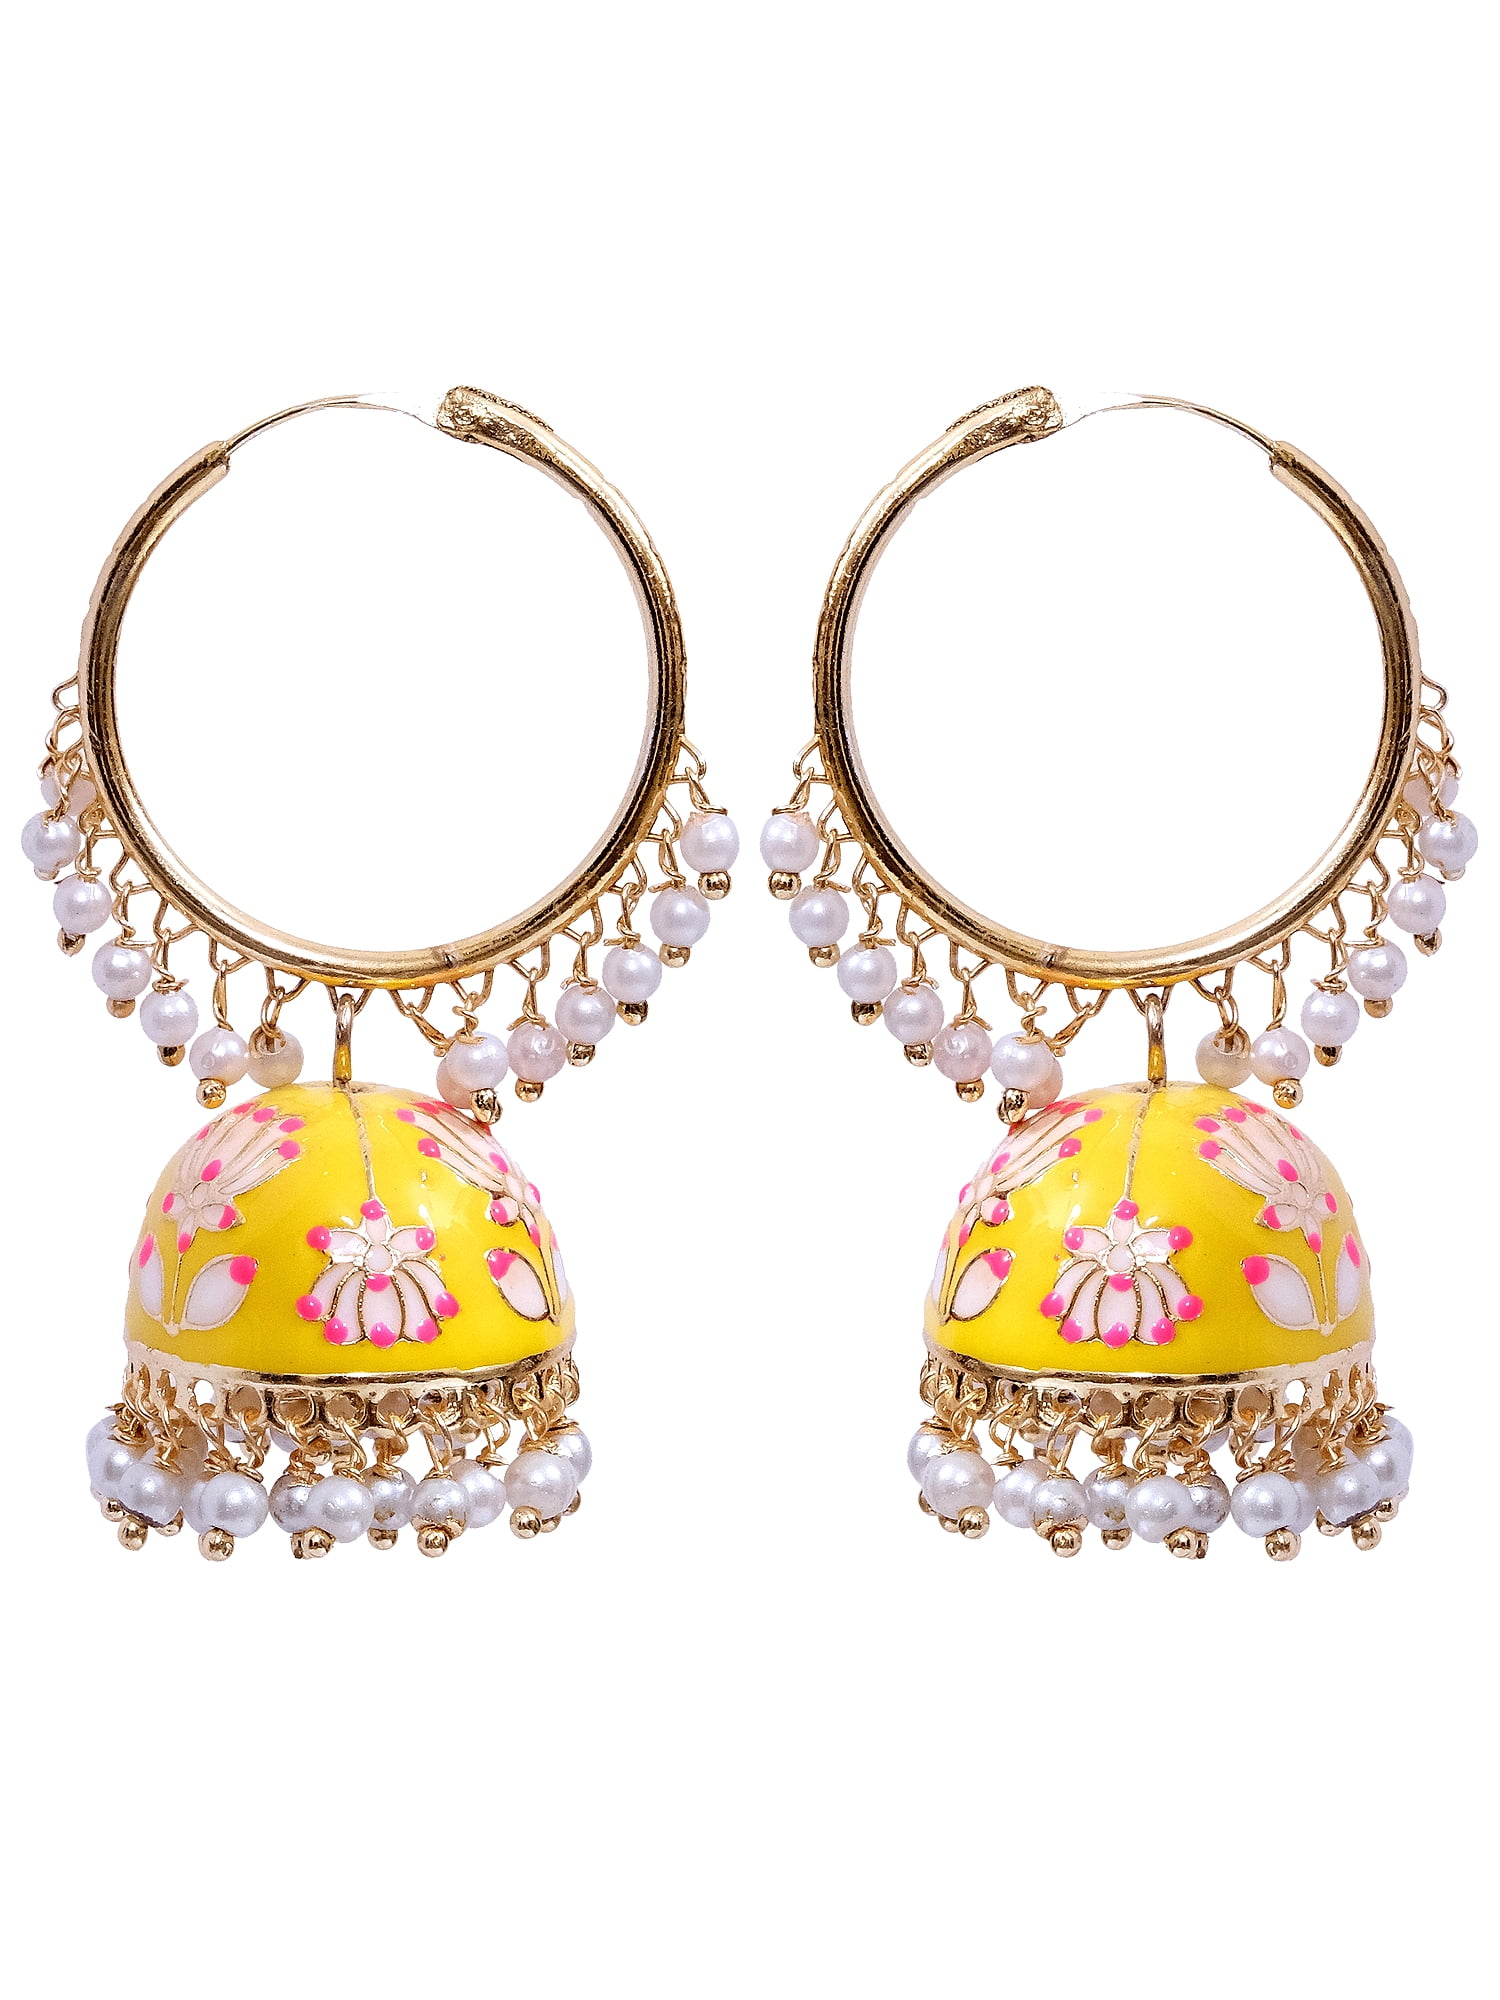 Yellow Meenakari Lotus Jhumka Earring for Wedding | FashionCrab.com